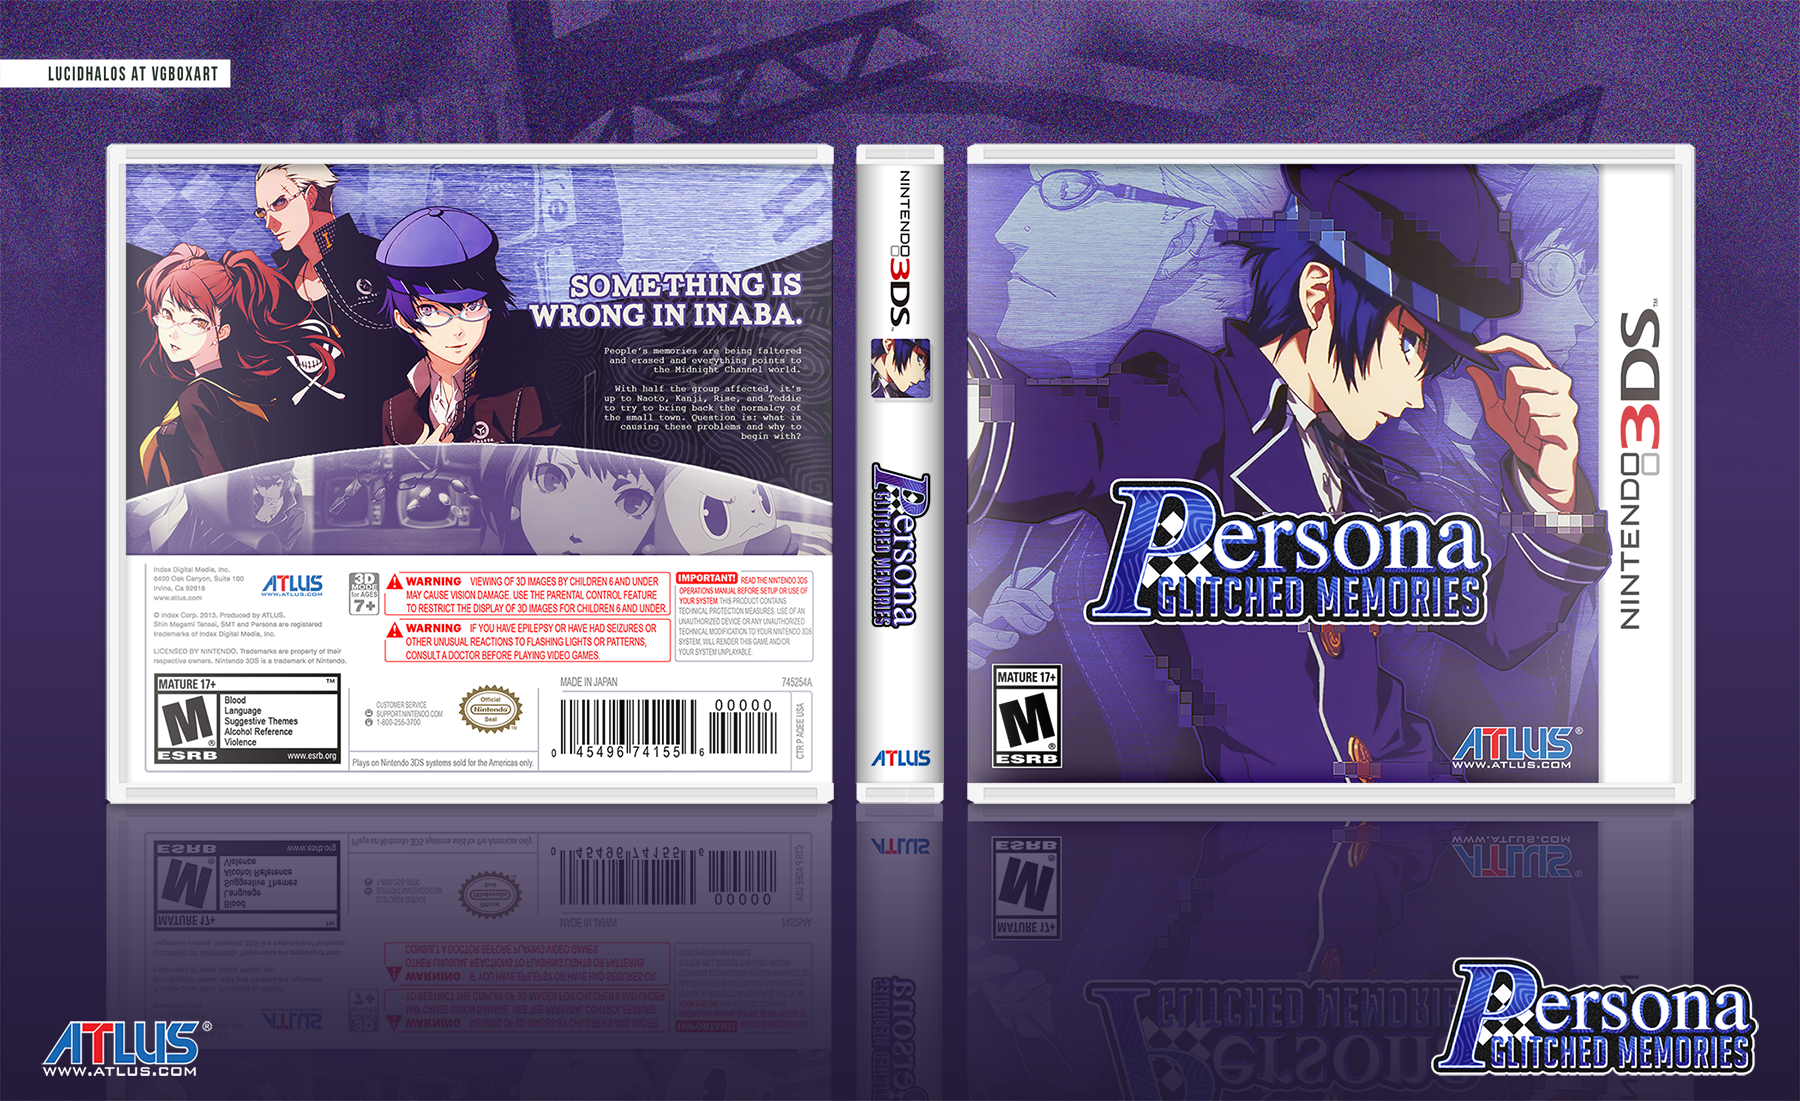 Persona: Glitched Memories box cover